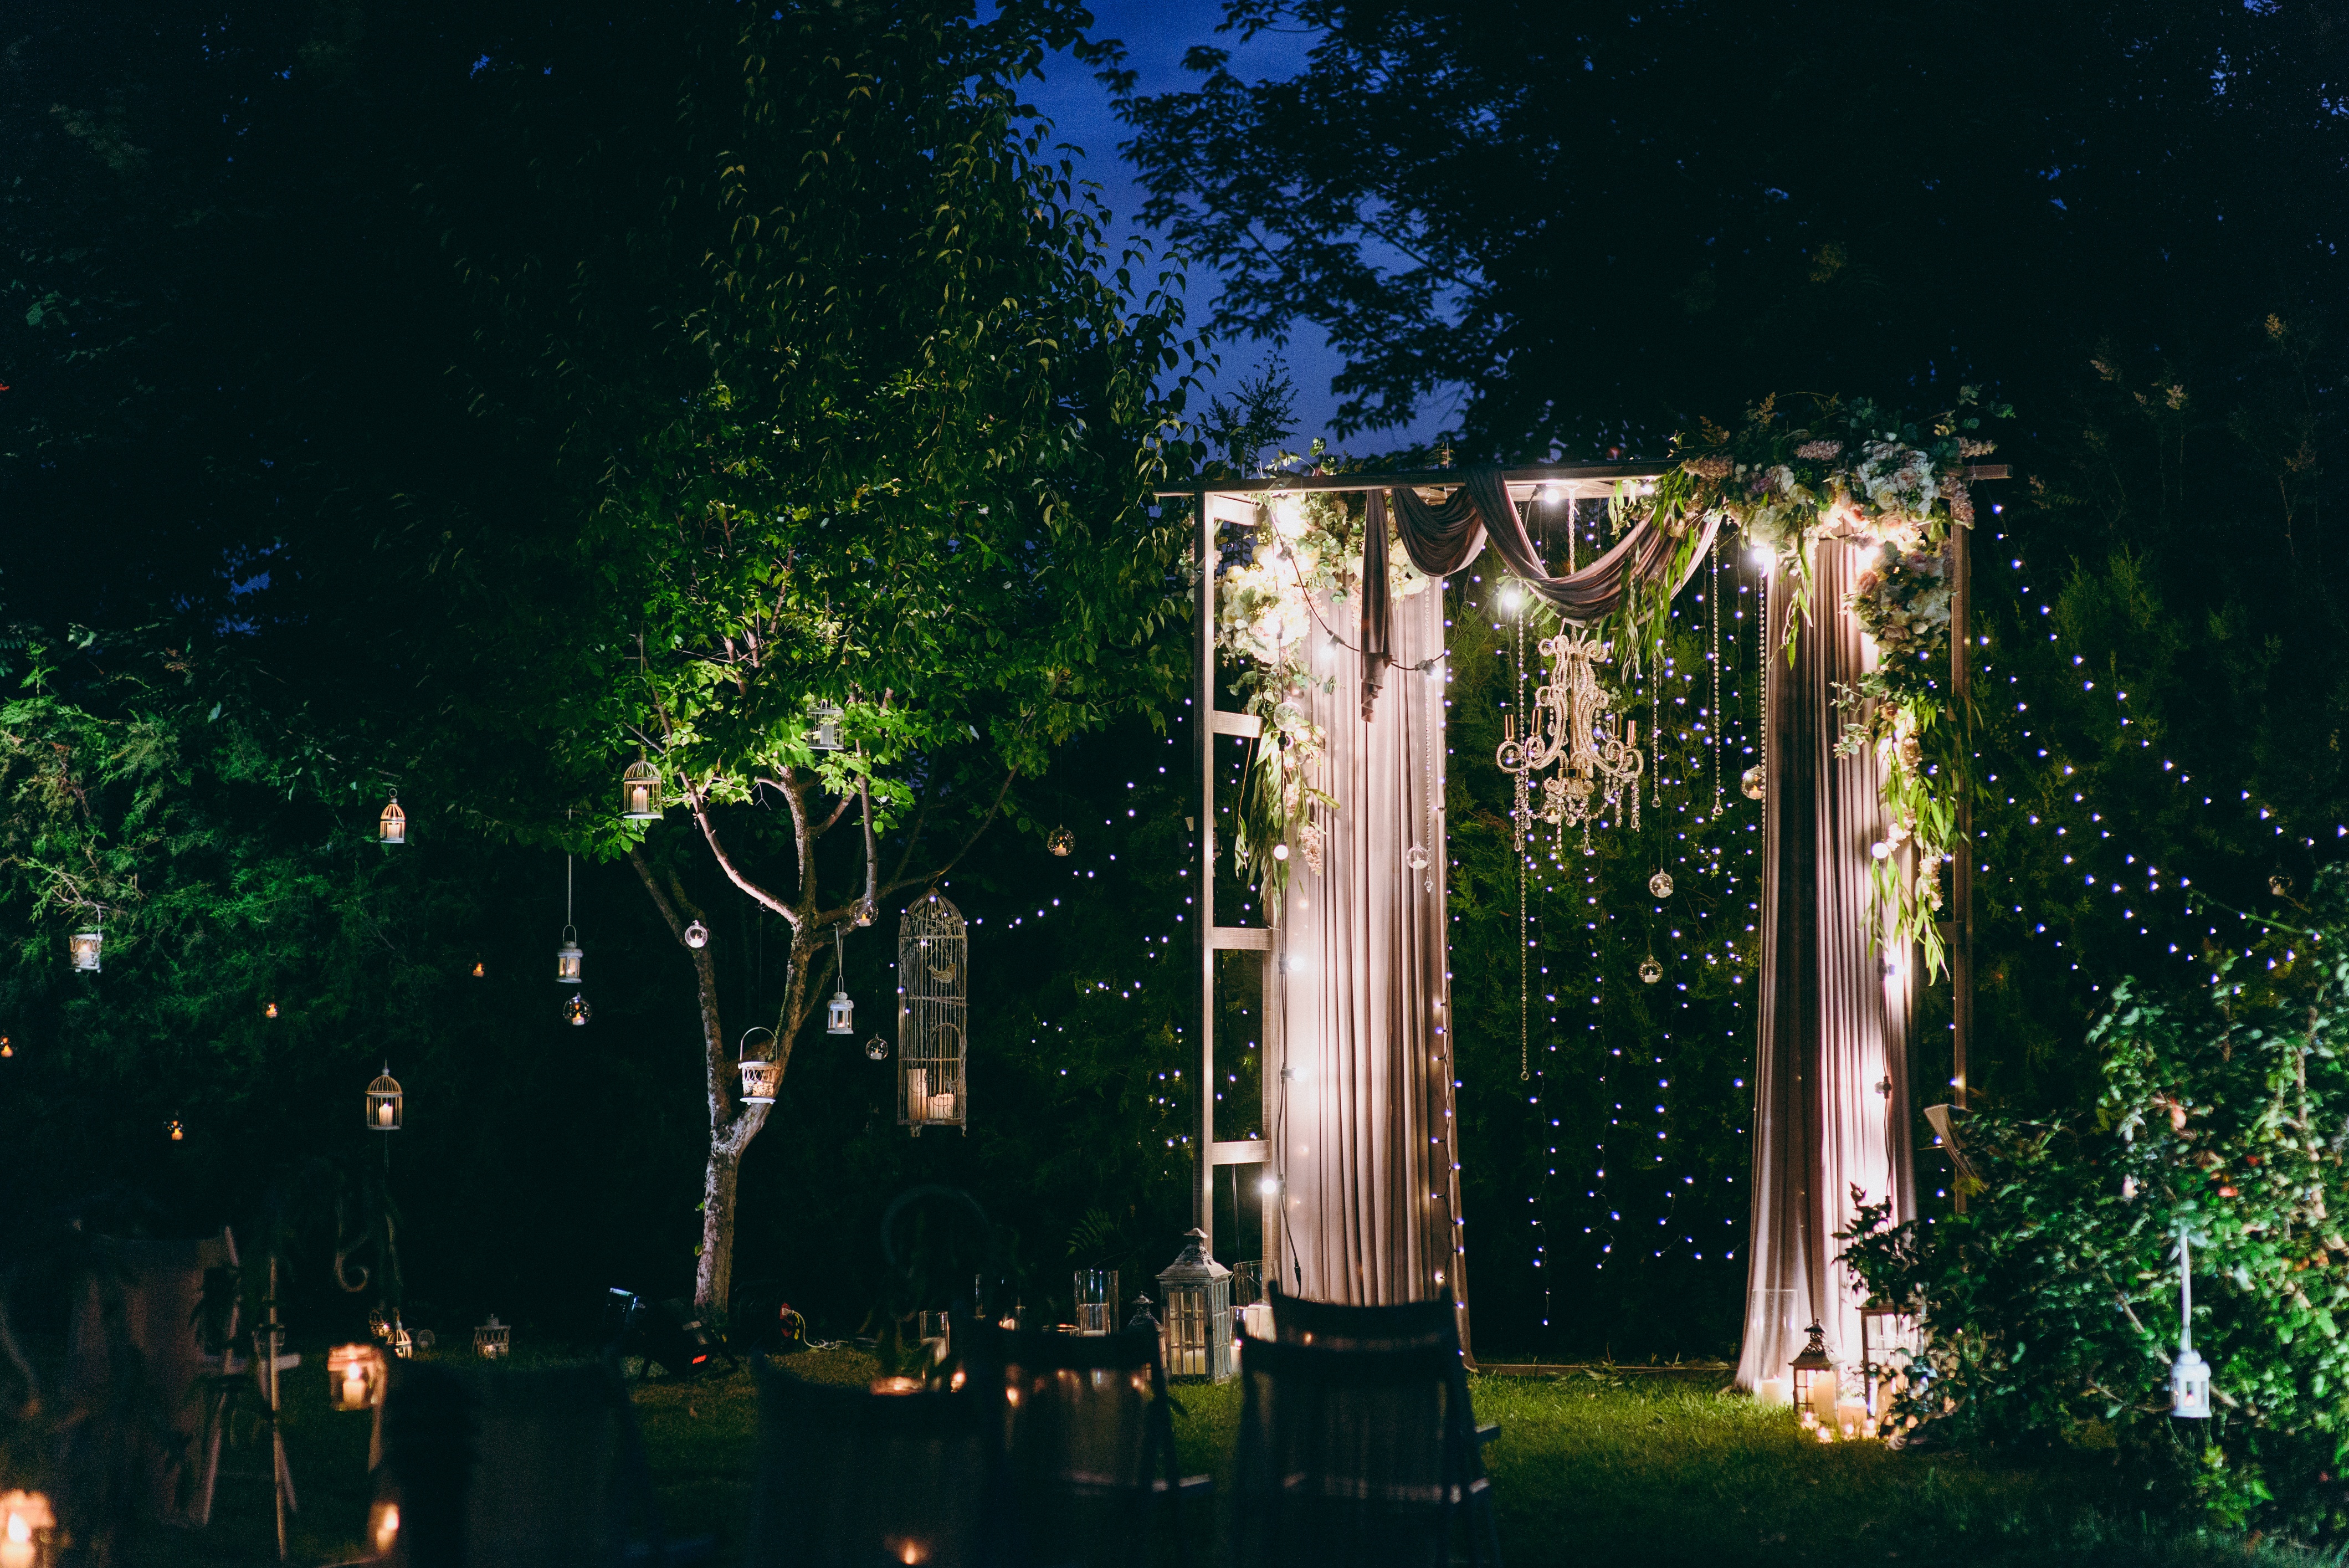 luxury outdoor garden party wedding venue nj 